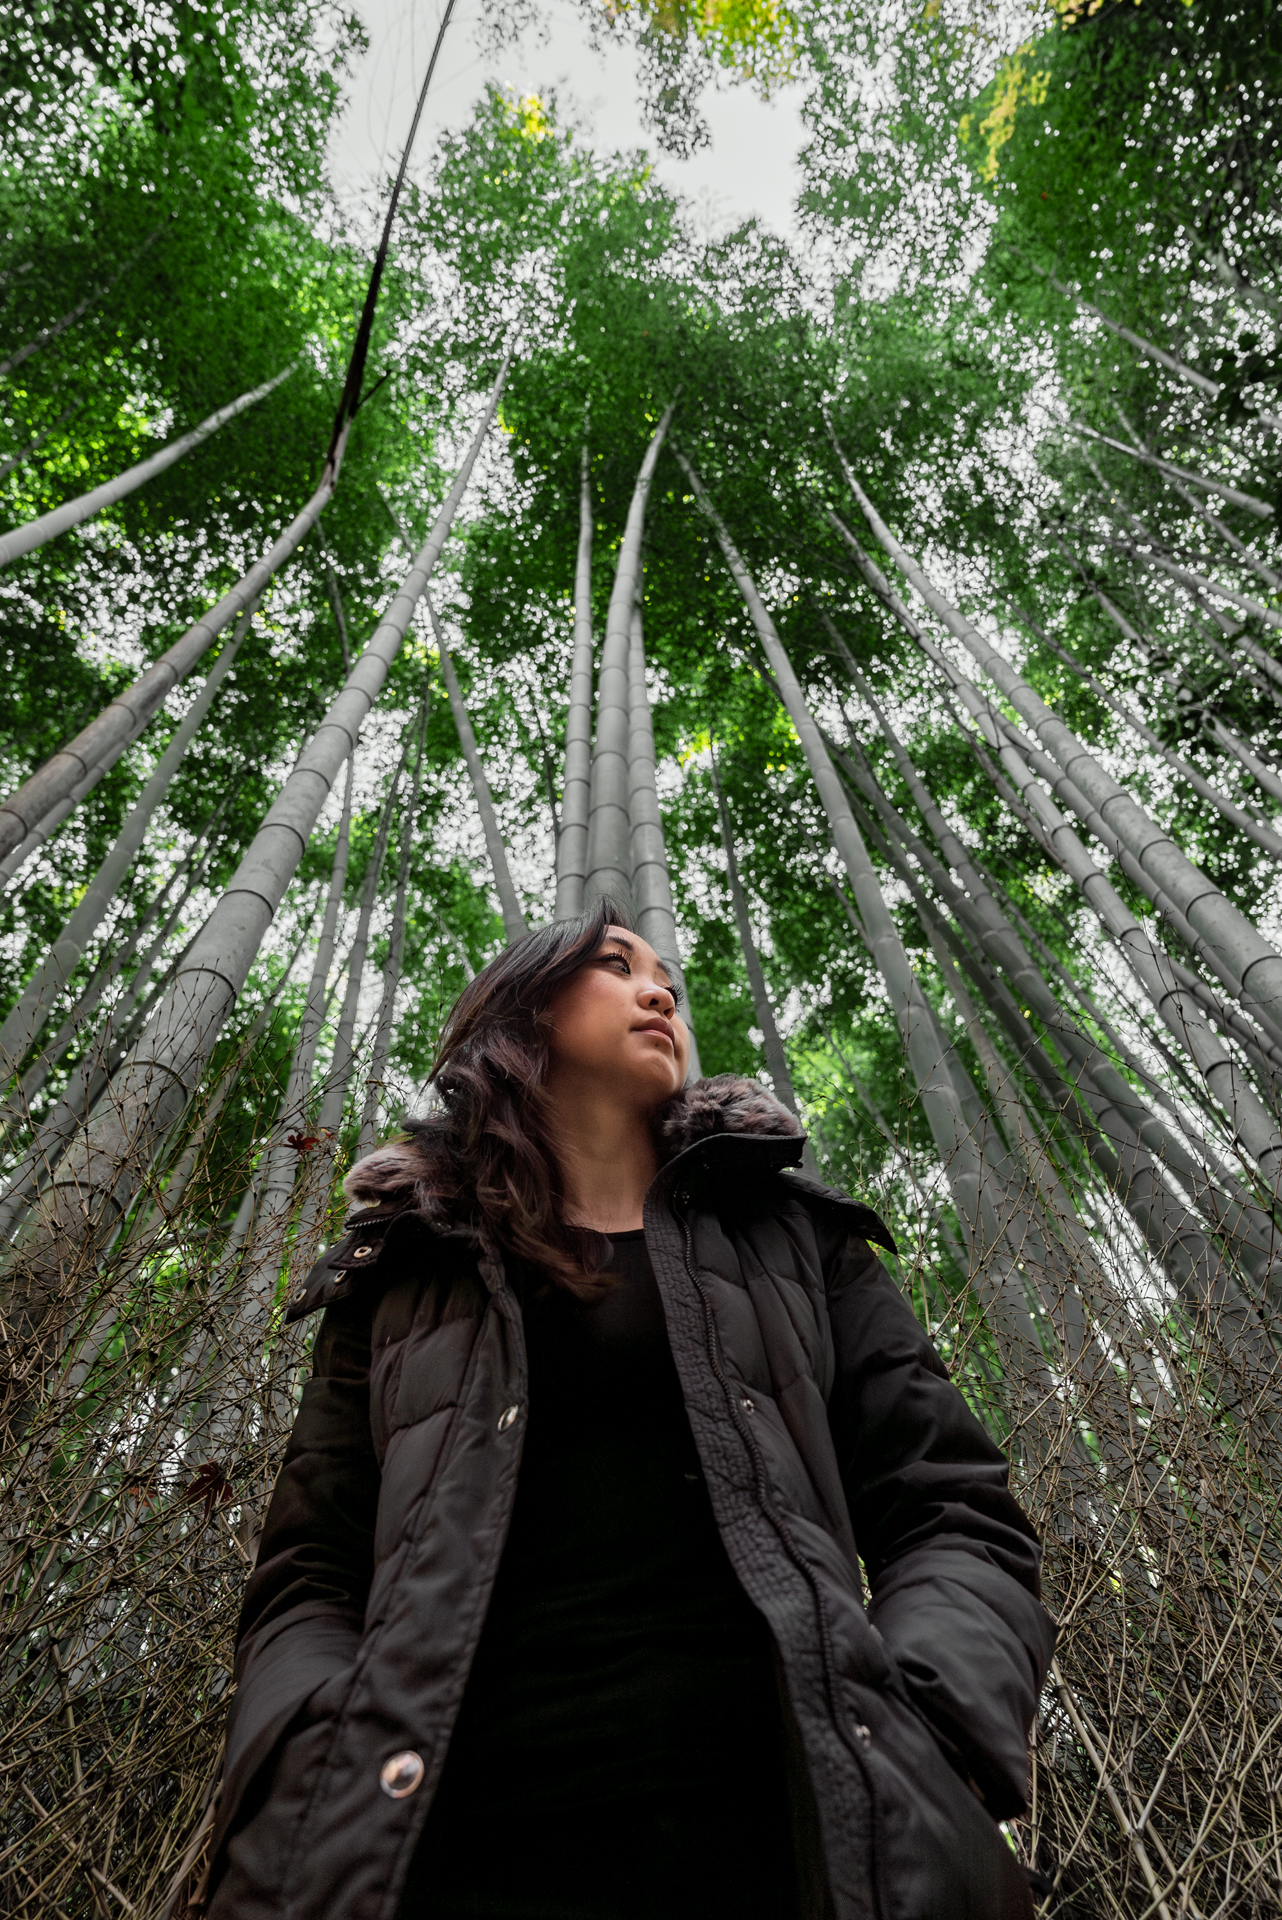 Is Arashiyama Bamboo Forest Worth Visiting? I Think Not...